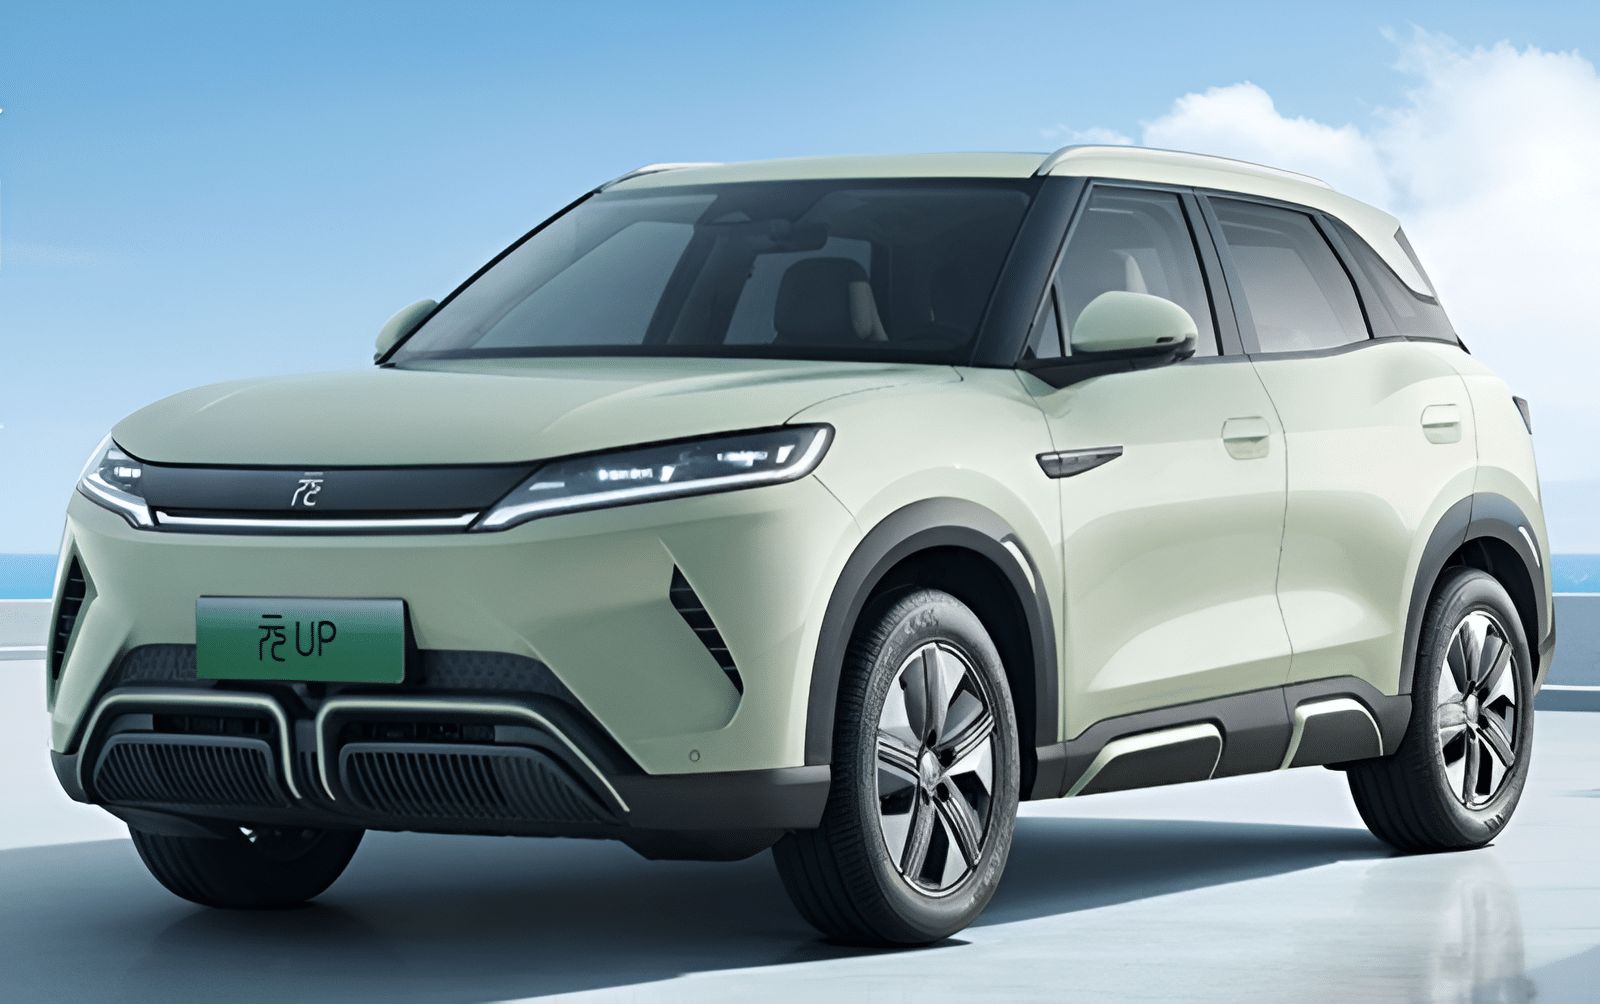 הוכרז: הרכב החשמלי BYD Yuan UP במחיר של 48,300 שקלים בסין